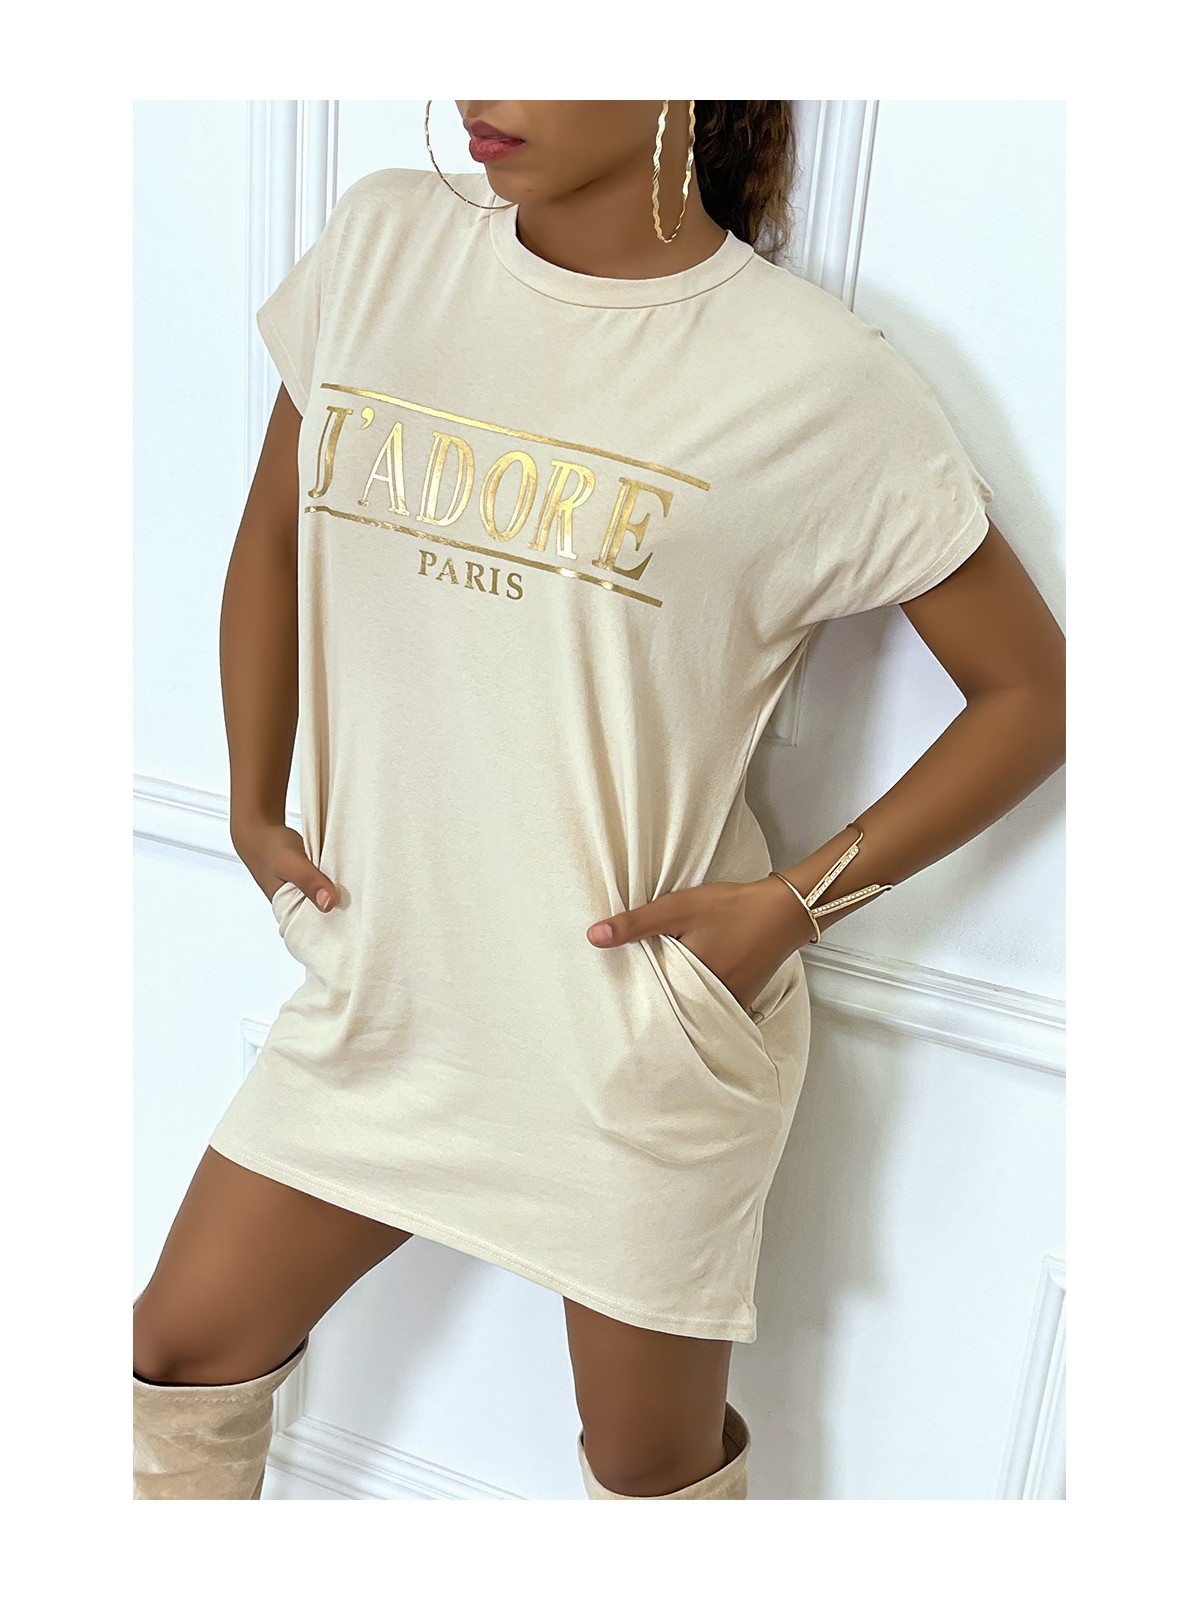 Robe T-shirt courte asymétrique beige avec écriture doré "J'adore" et poches - 6